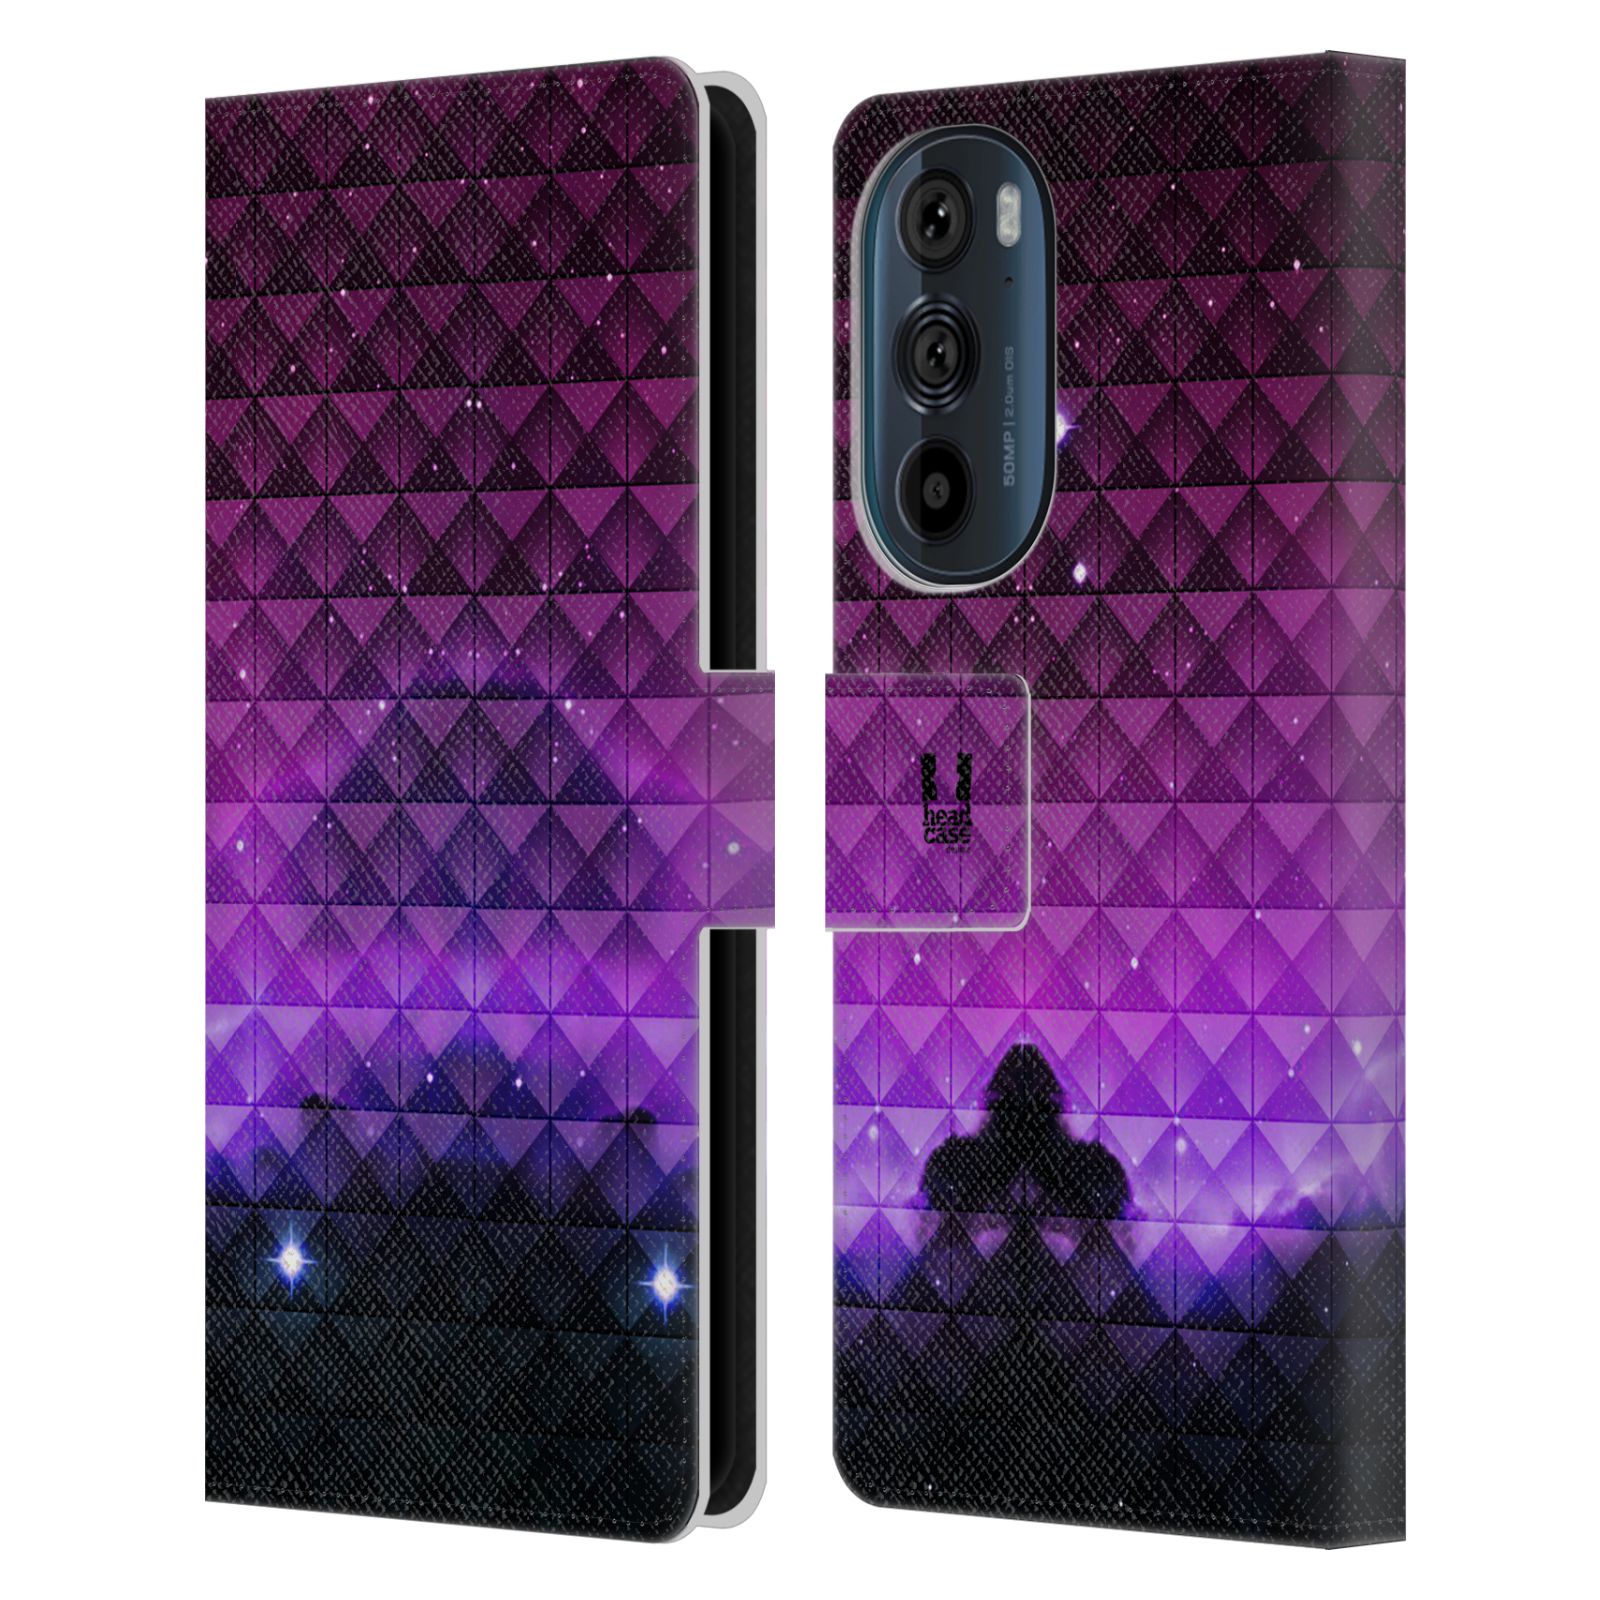 Pouzdro HEAD CASE na mobil Motorola EDGE 30 barevná vesmírná mlhovina fialová a černá